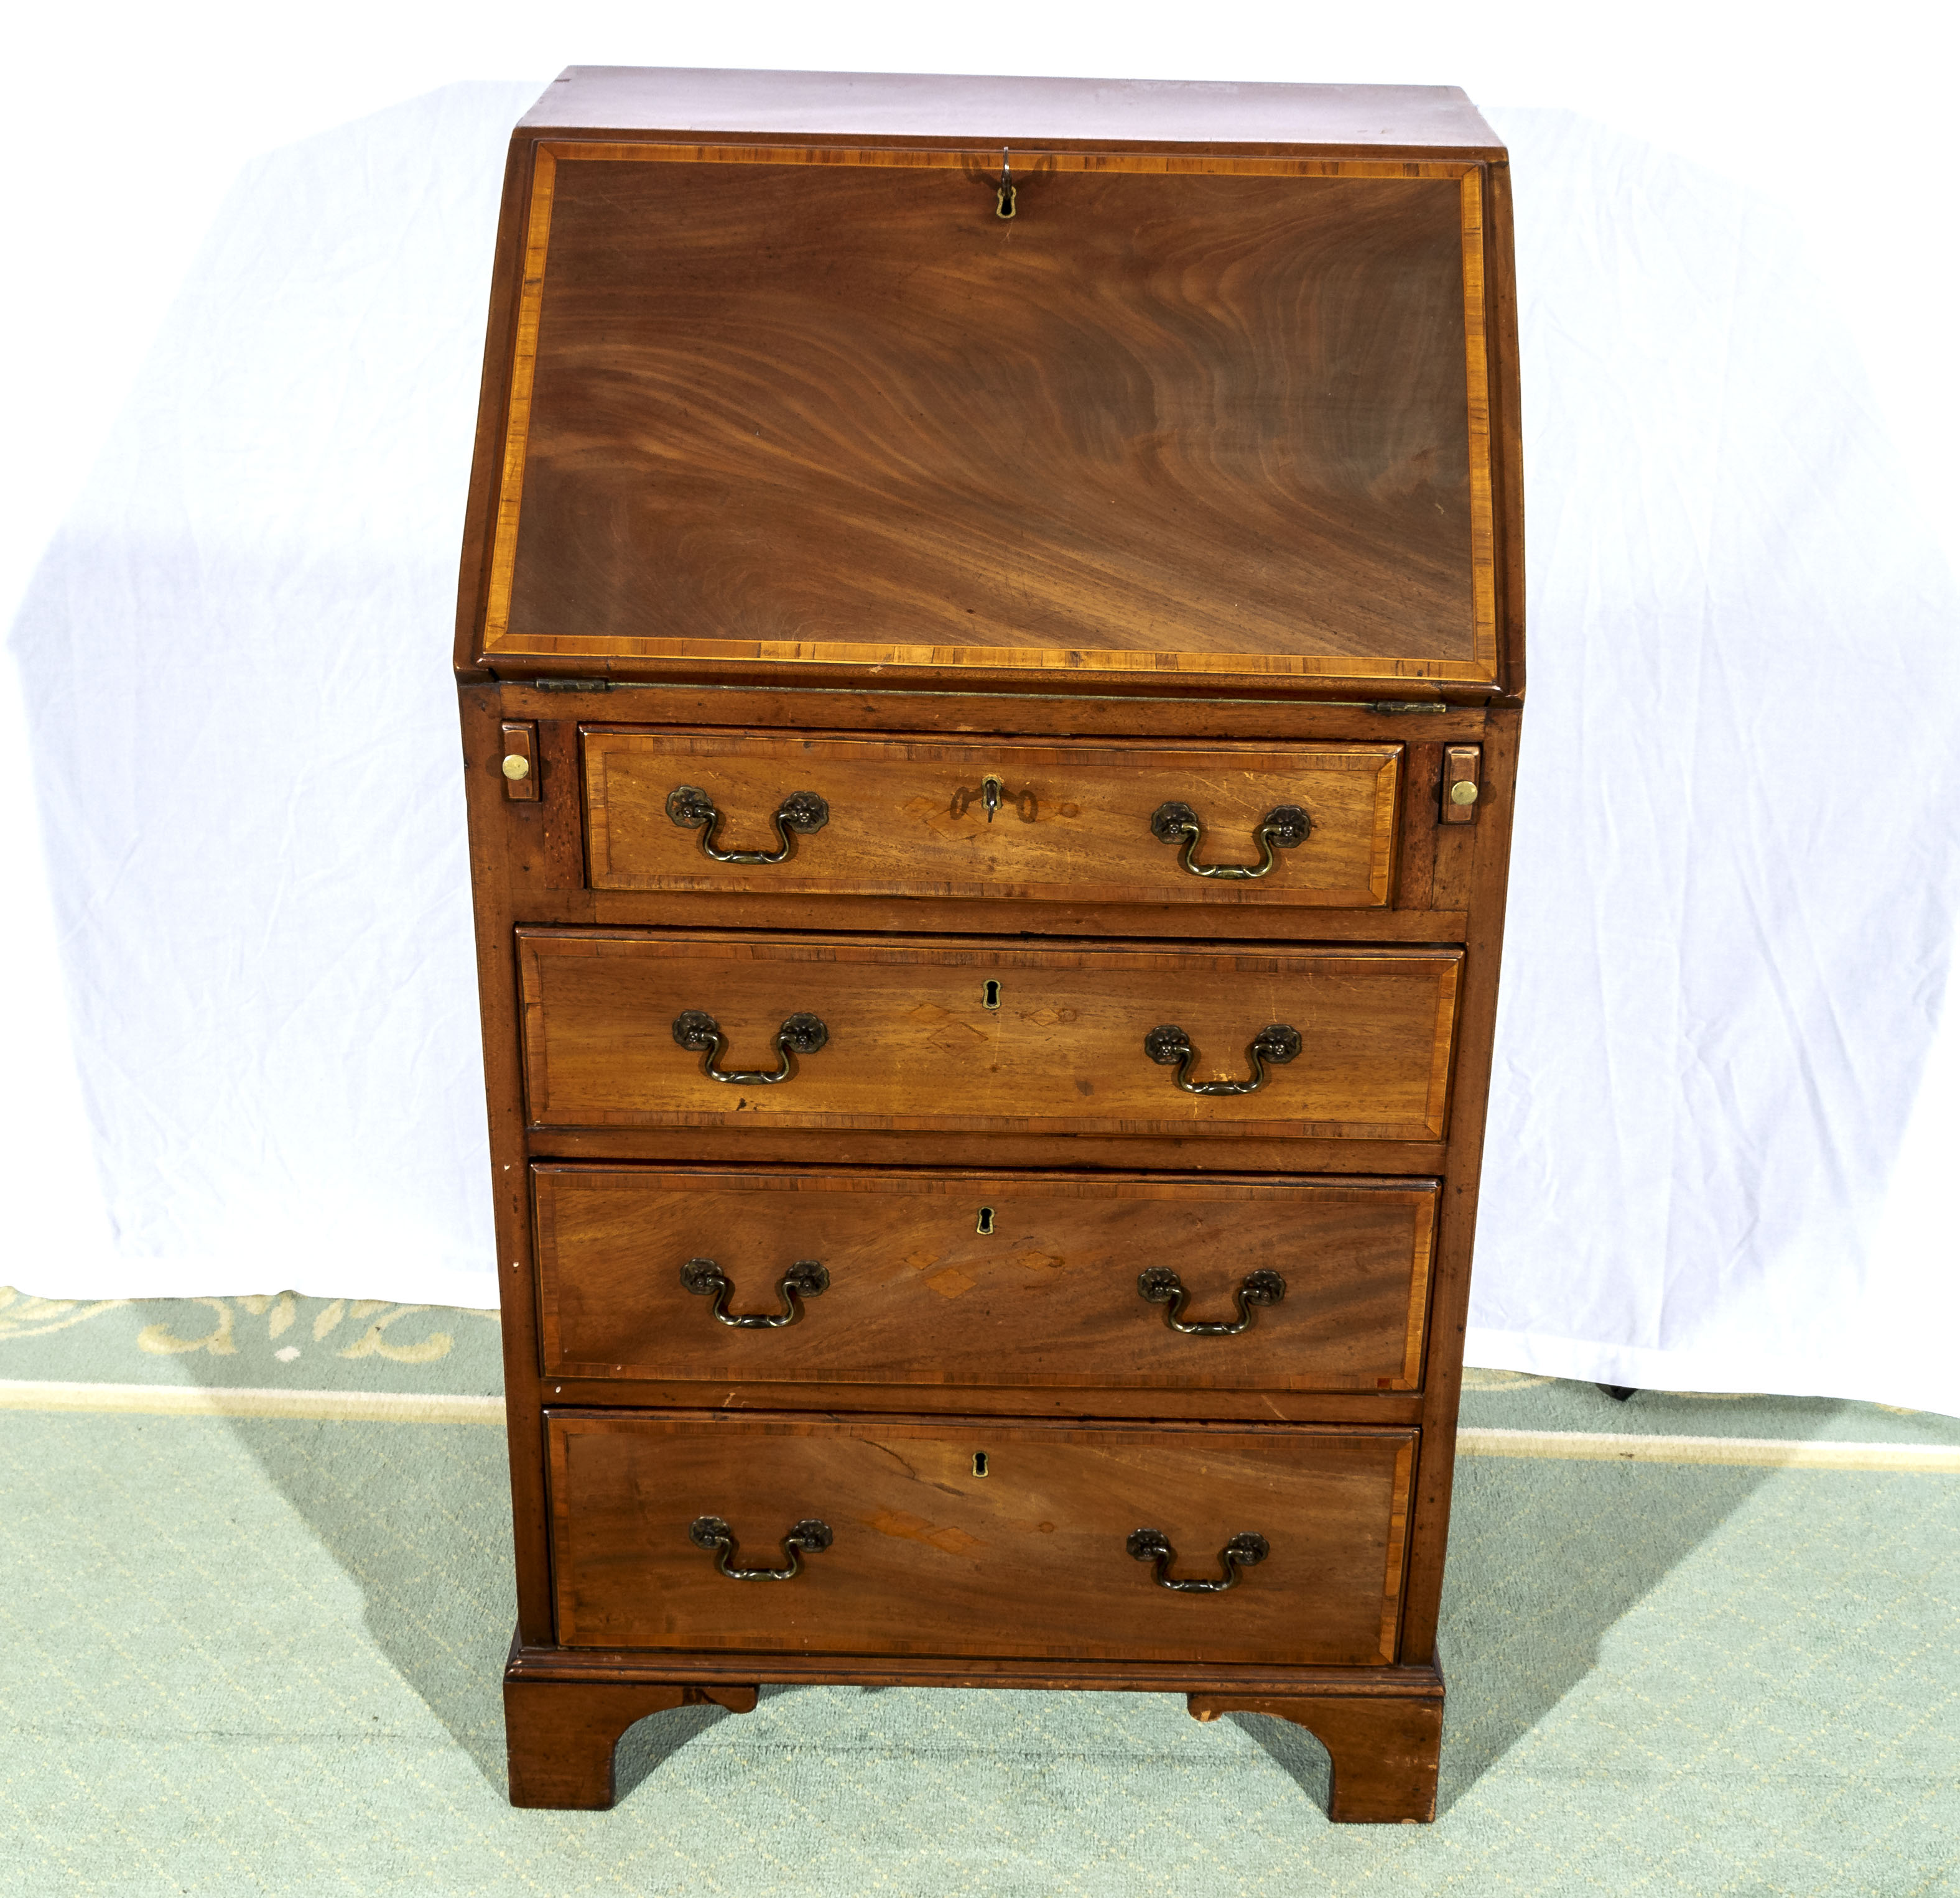 A good quality Edwardian inlaid mahogany bureau. 57cm wide x 47cm deep and 100cm tall